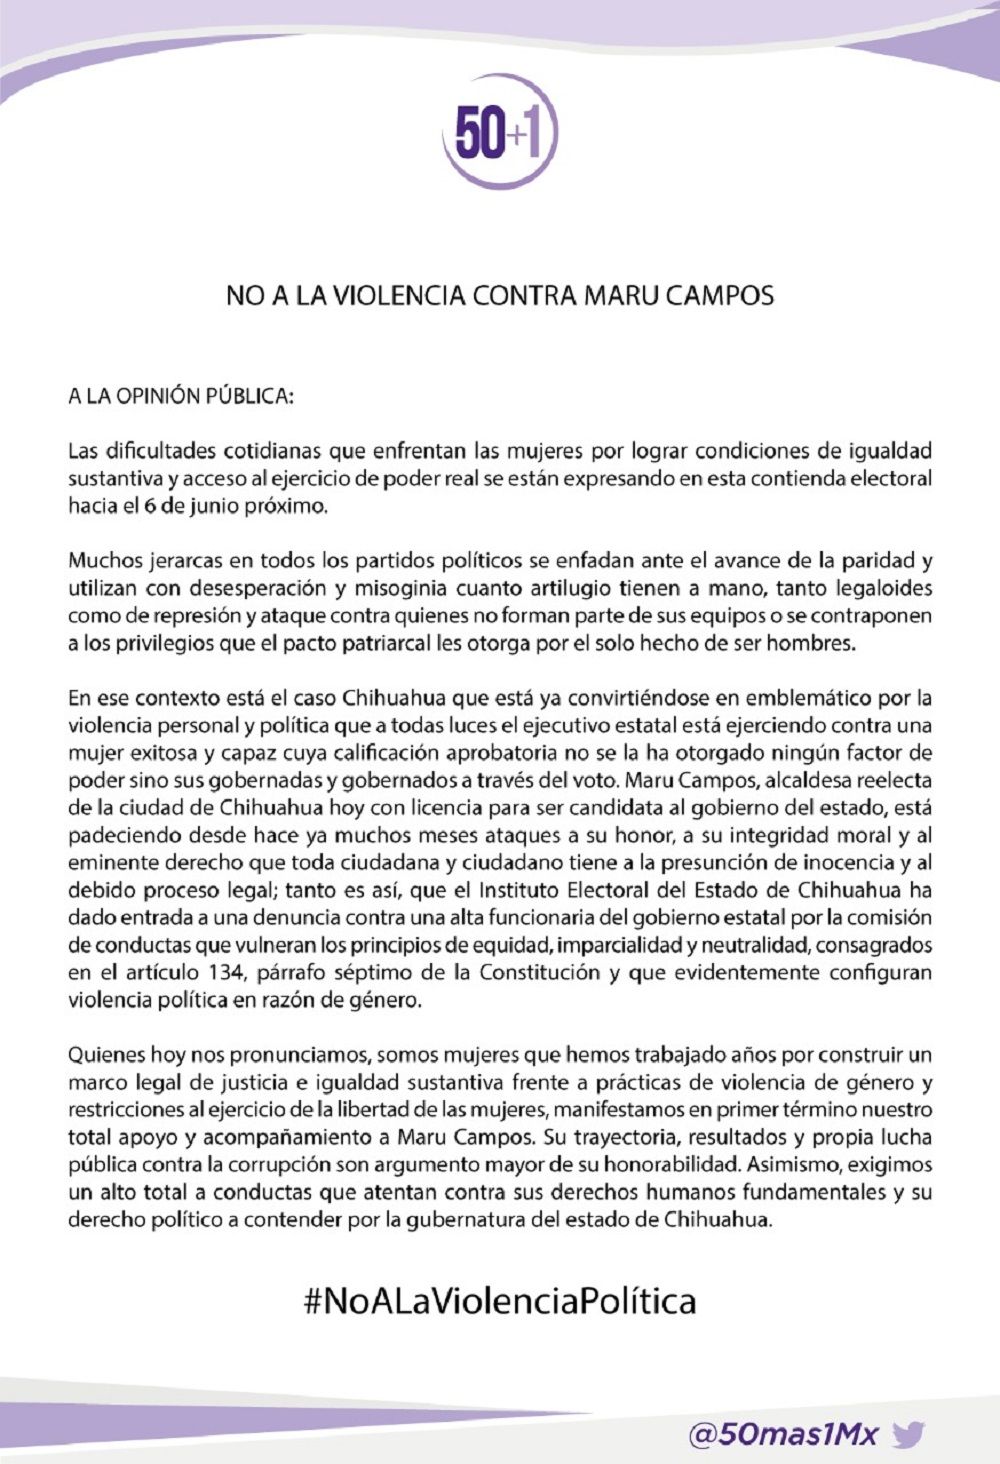 Colectivo 50+1 acusa violencia política contra Maru Campos
